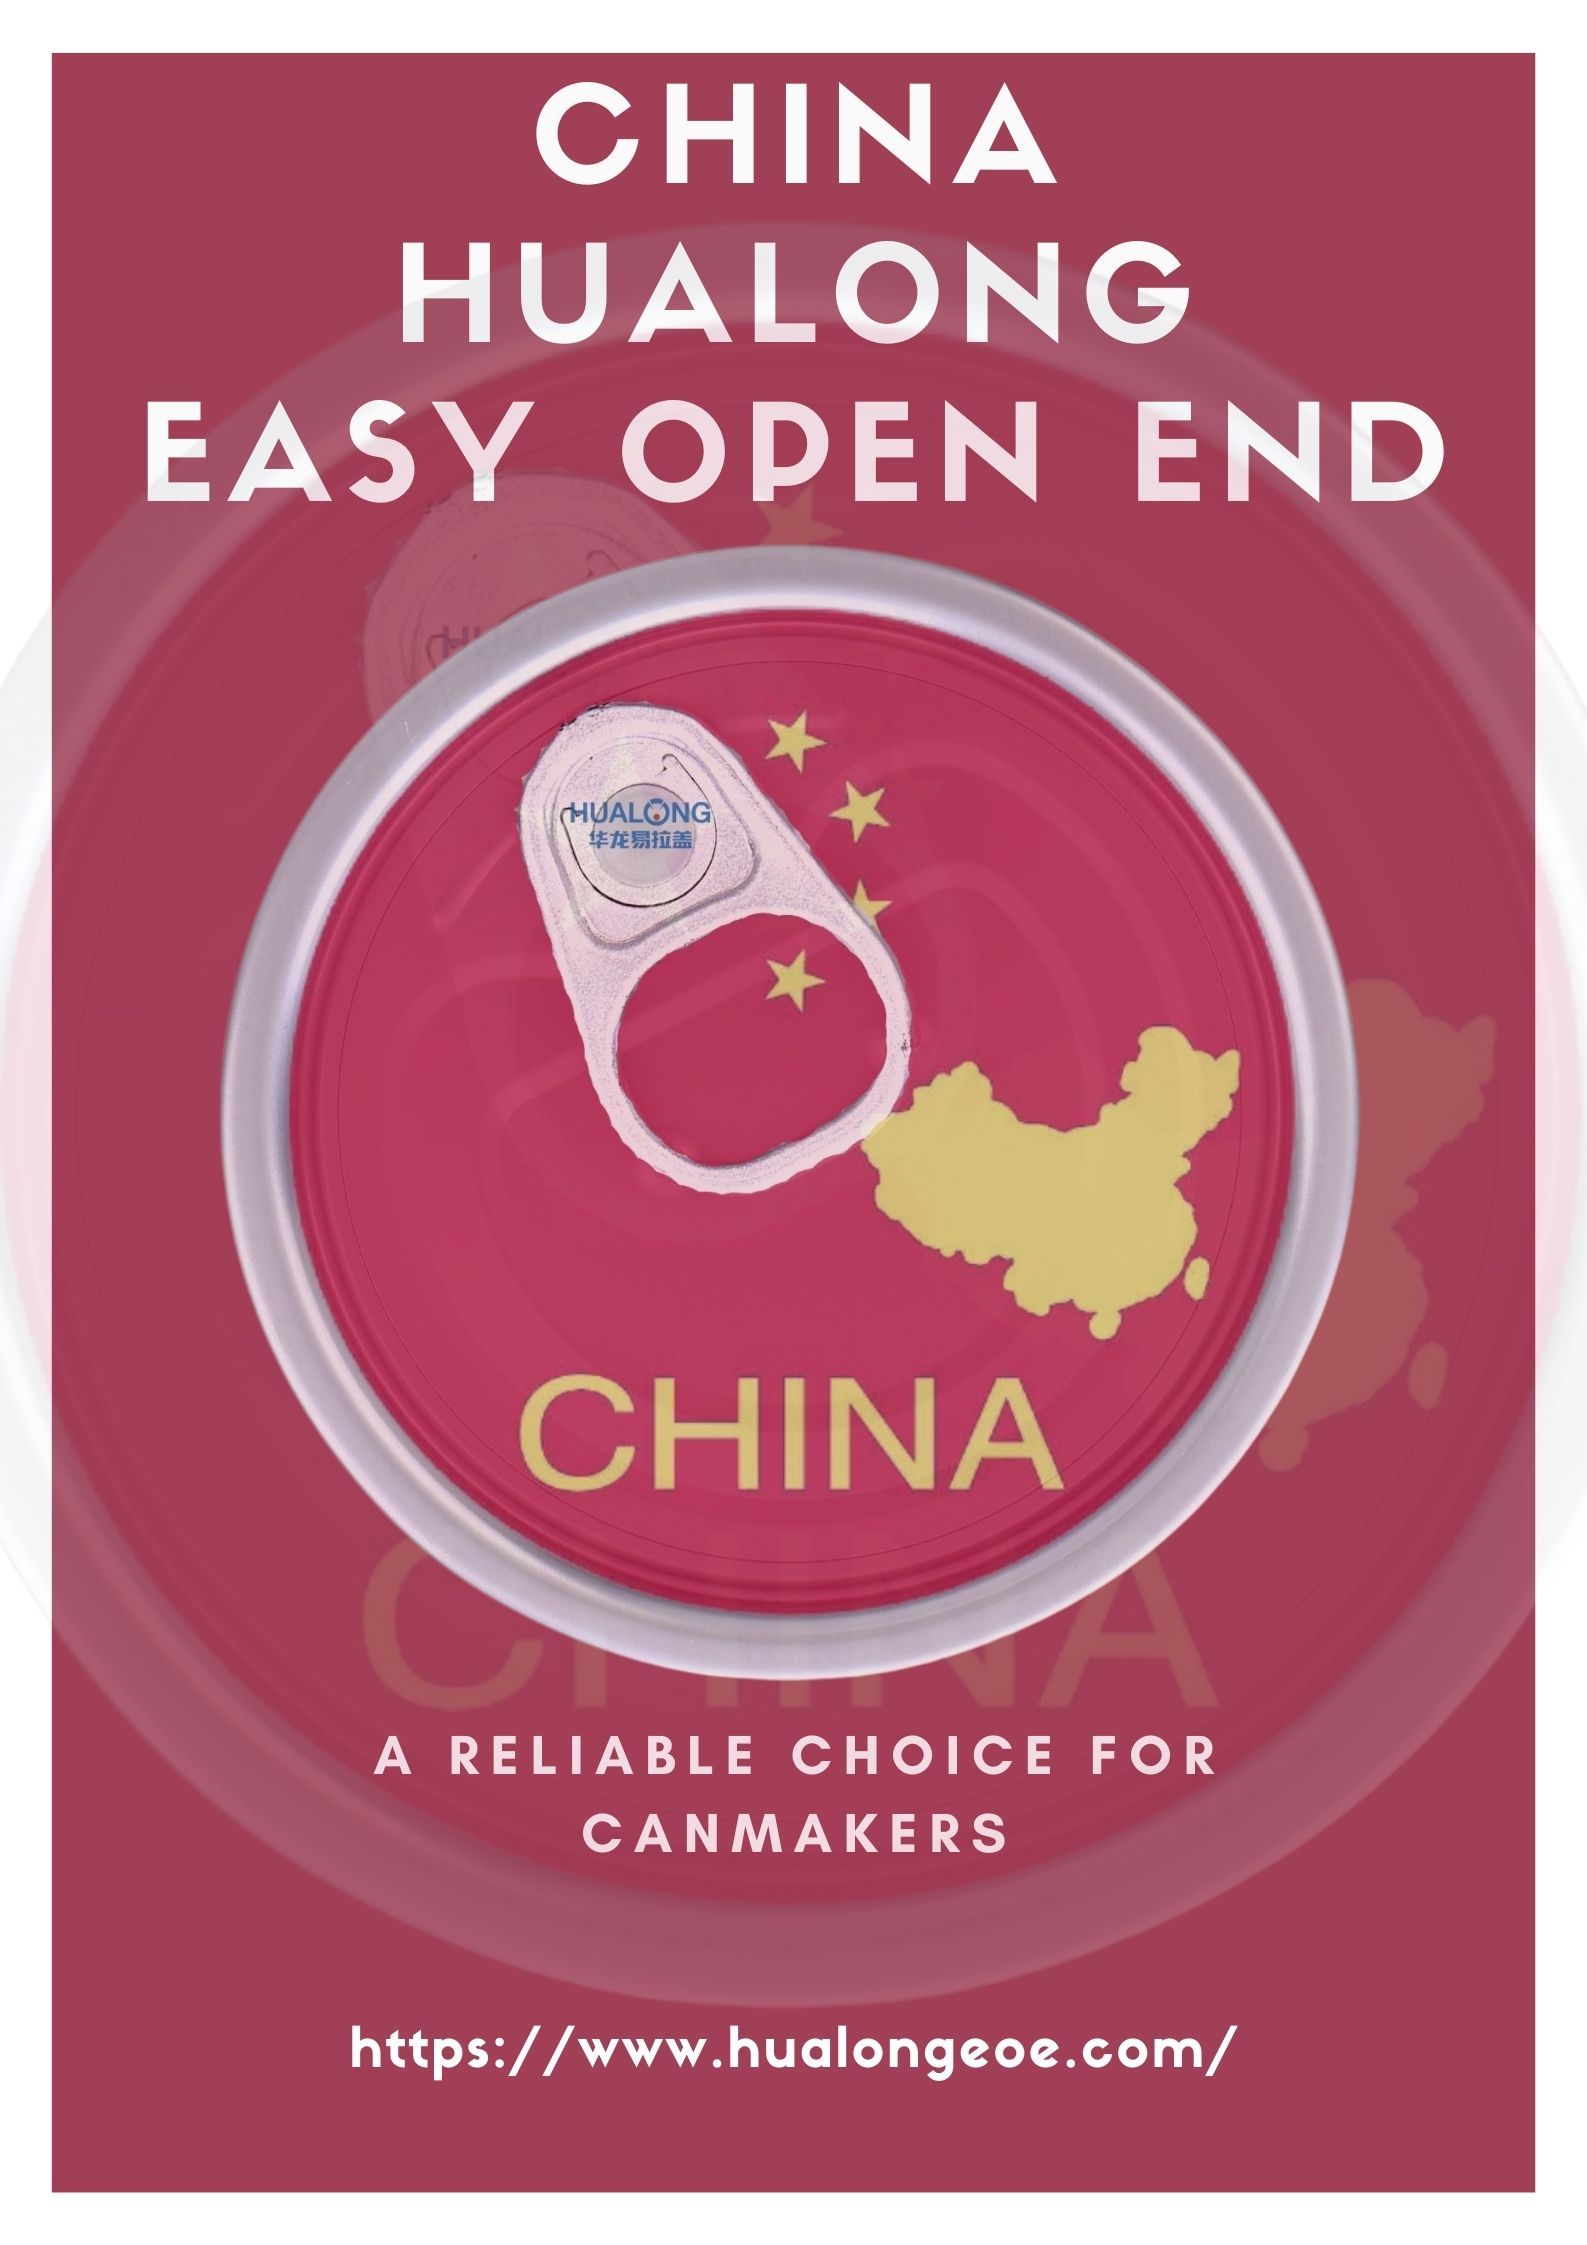 I-Hualong Easy Open End: UKhetho oluthembekileyo lweeCanmakers